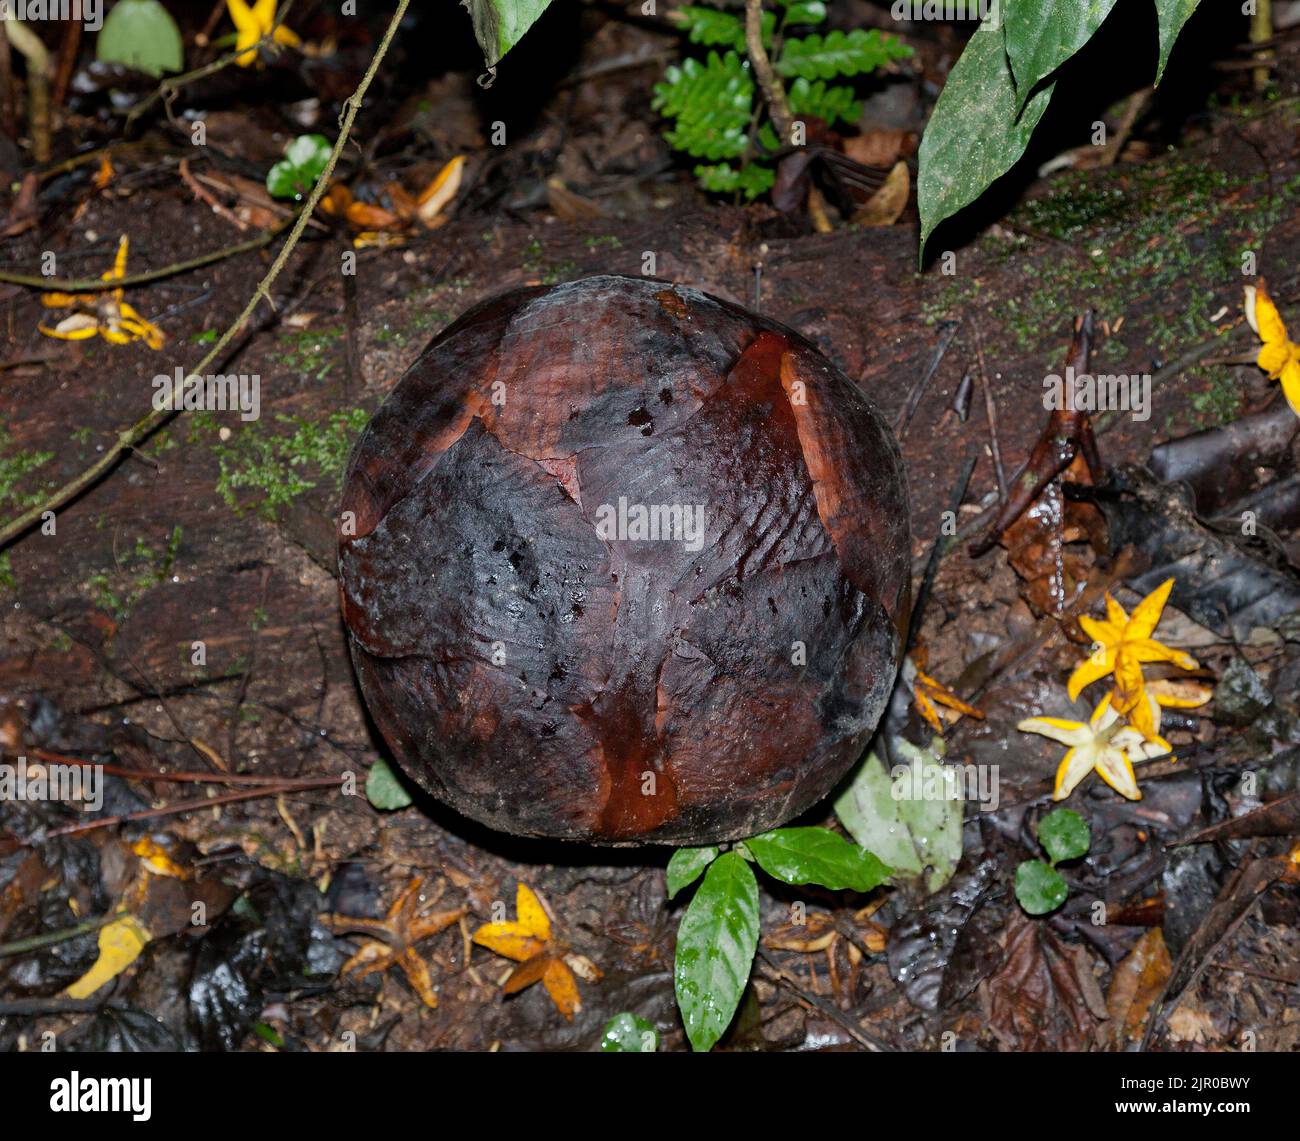 Rafflesia brotes en el suelo del bosque, Rafflesia kerri, Cameron Highlands, Malasia Foto de stock